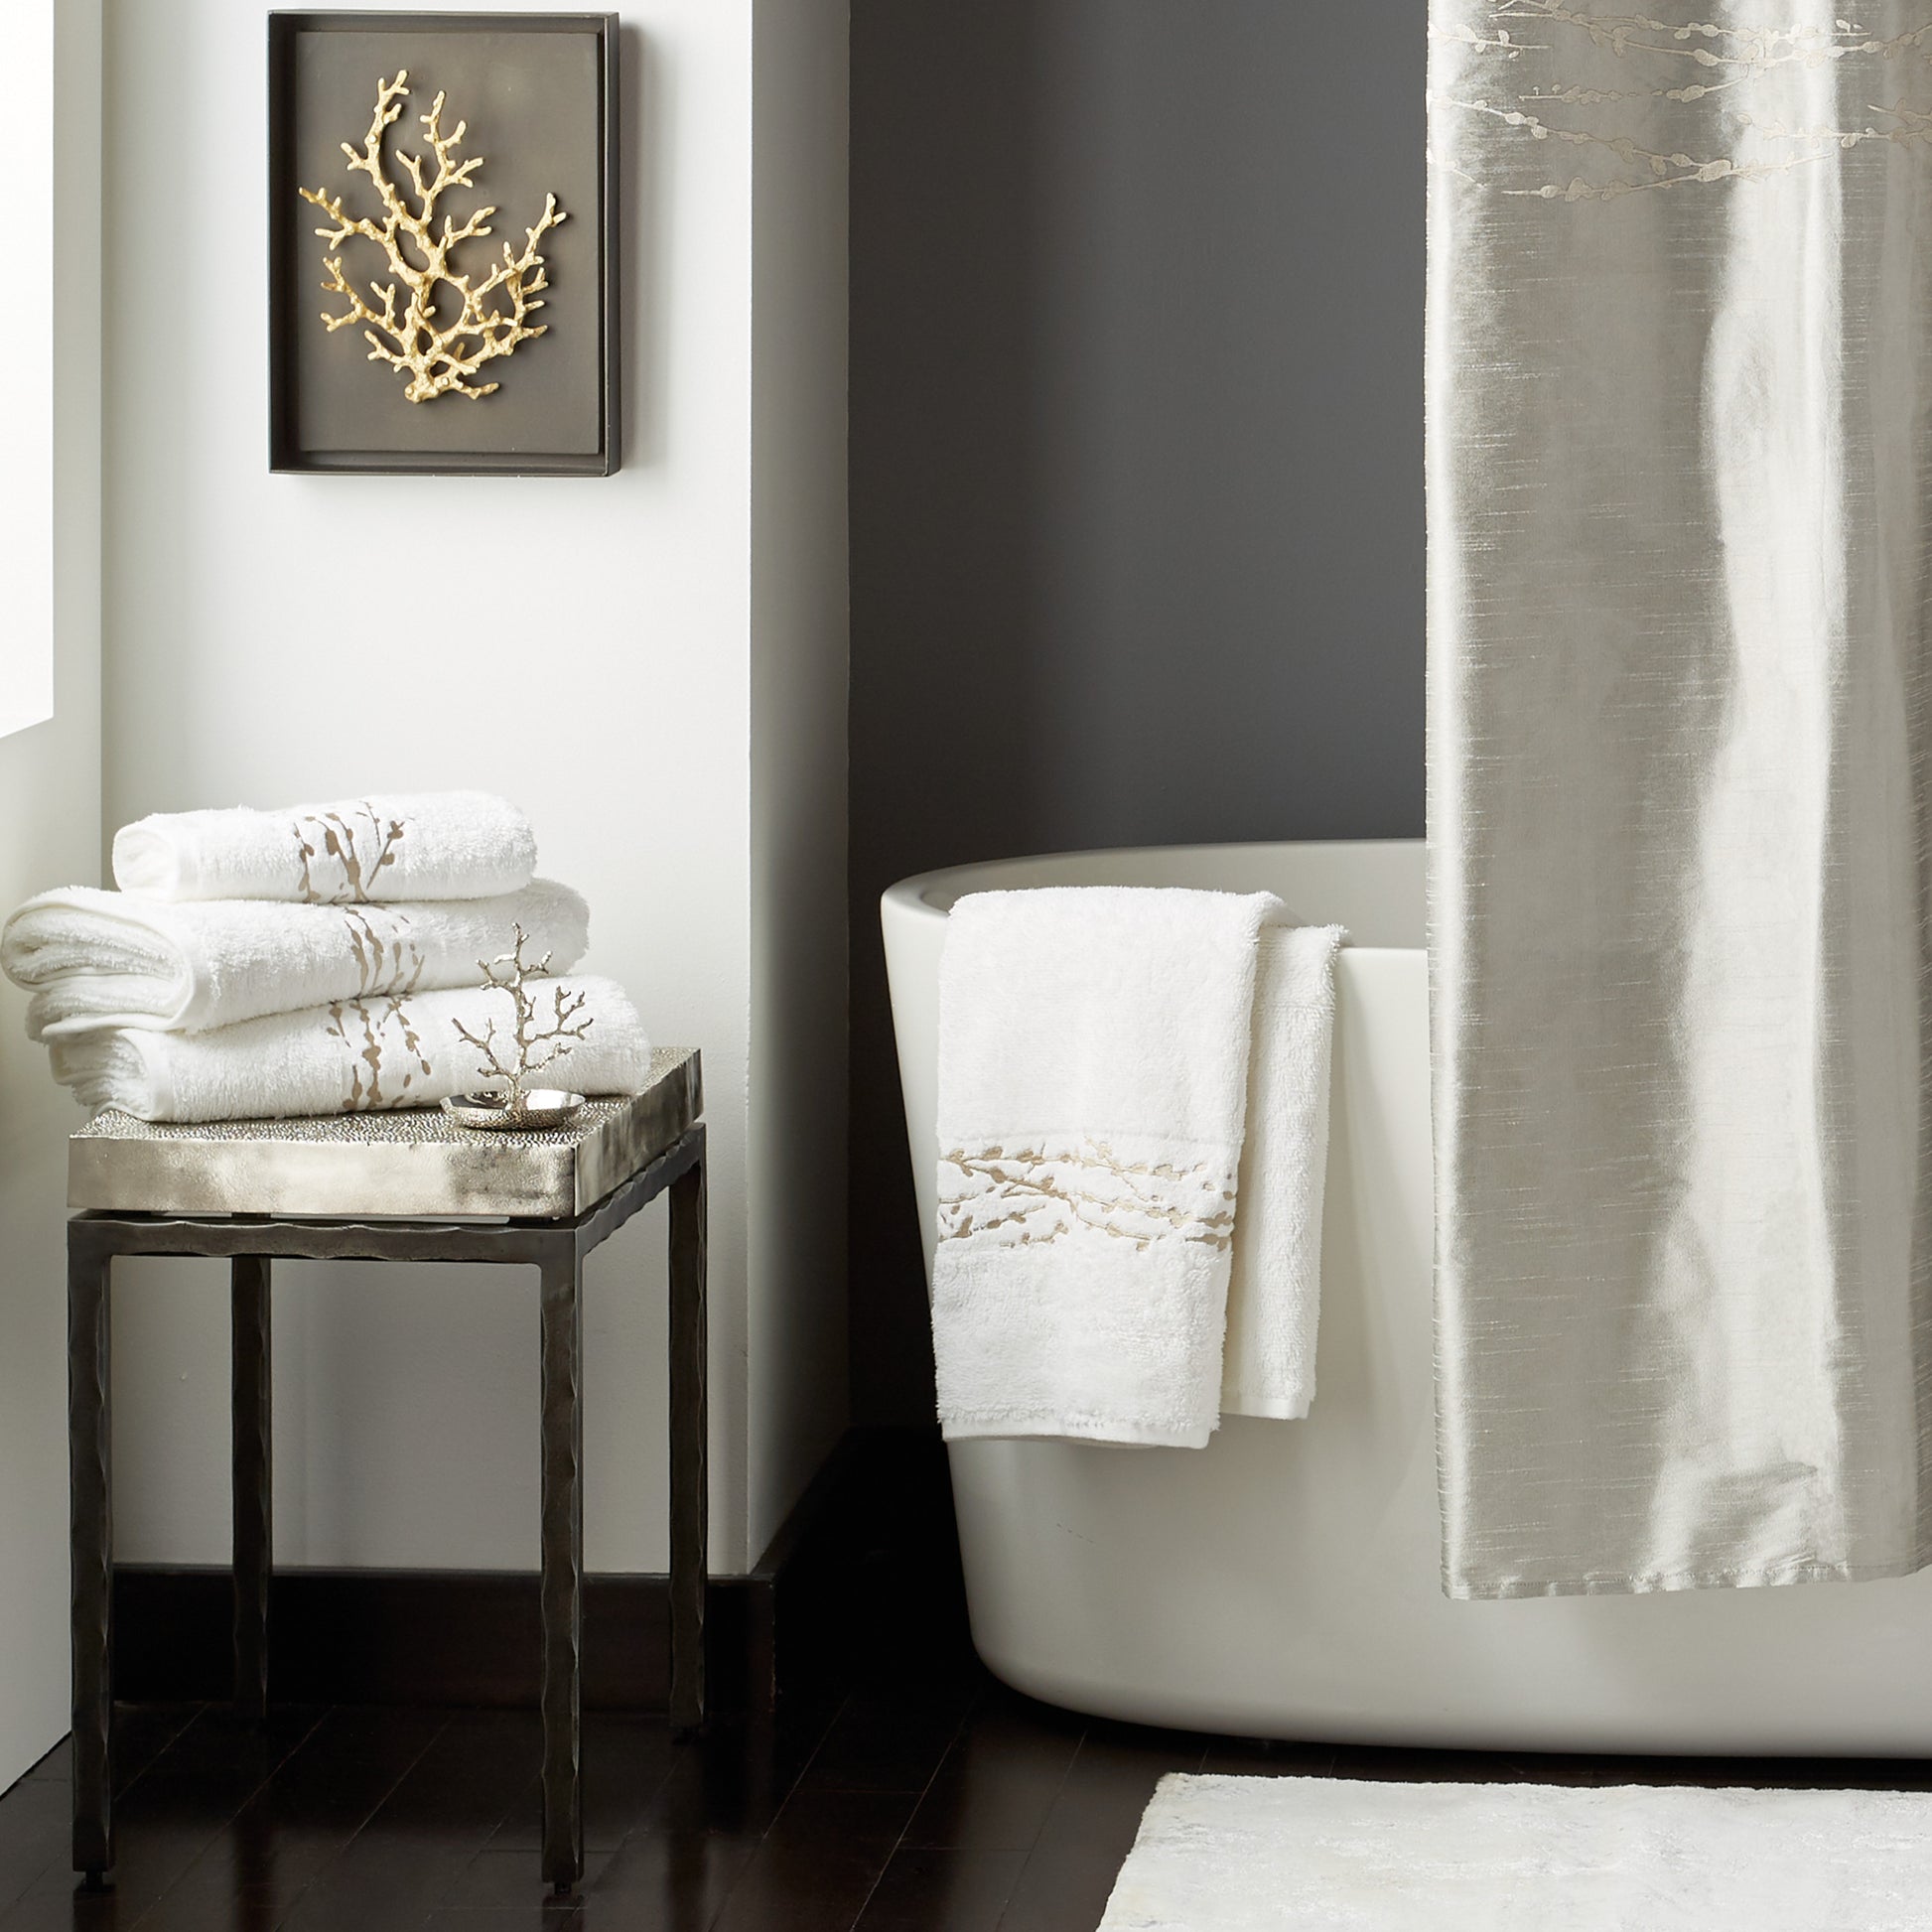 Michael Aram Luxury Bath: Luxury Bath Towels, Bath Rugs & More -  Bloomingdale's